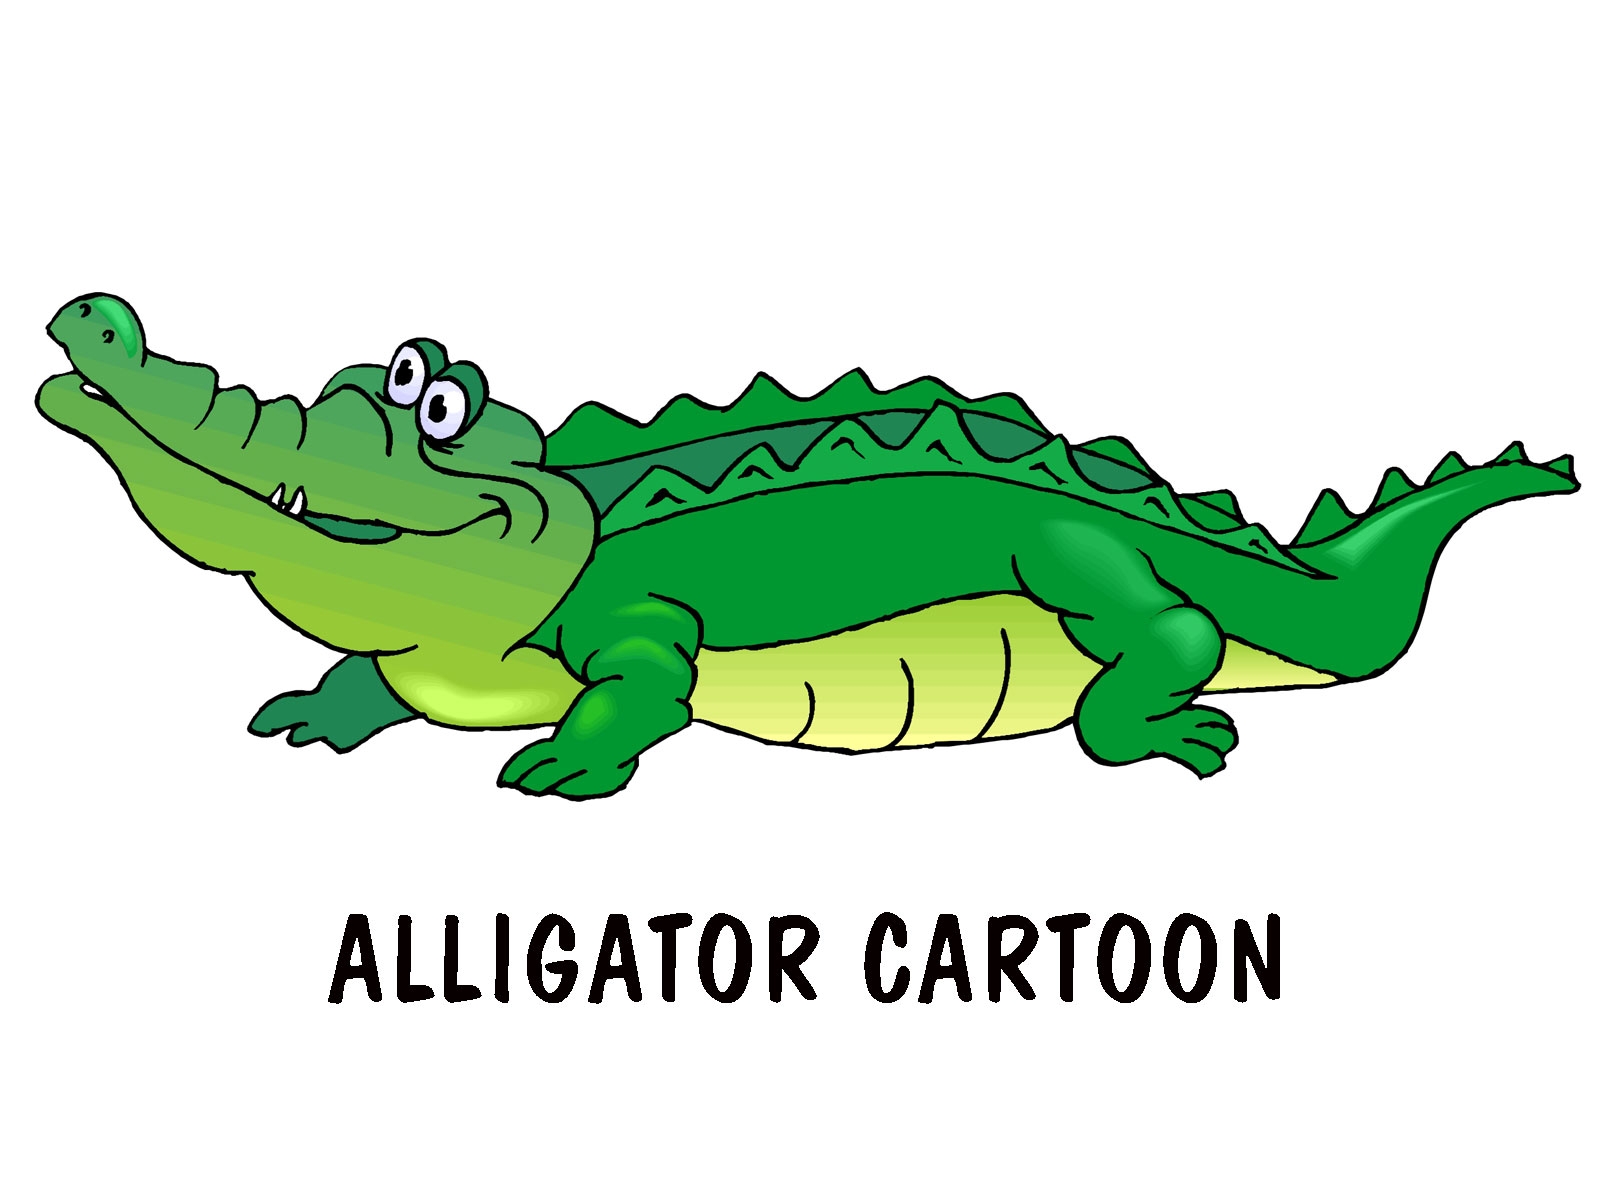 картинки животных для детей крокодил